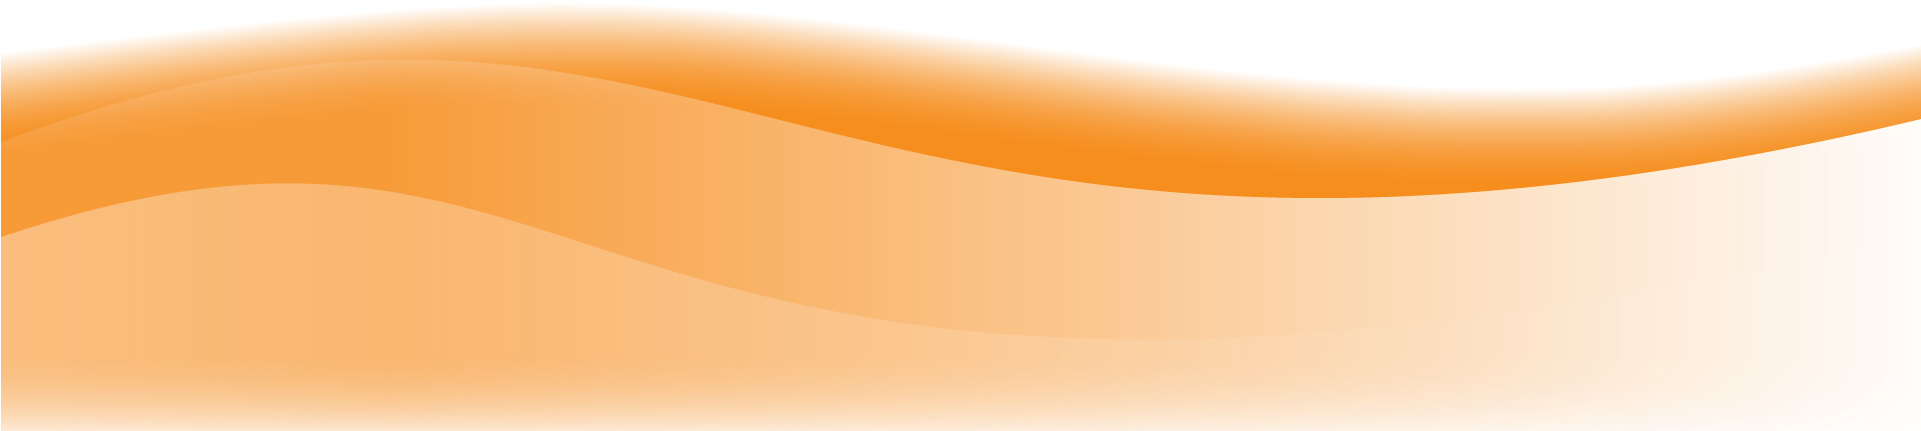 Vector Orange Wave PNG Transparent Image